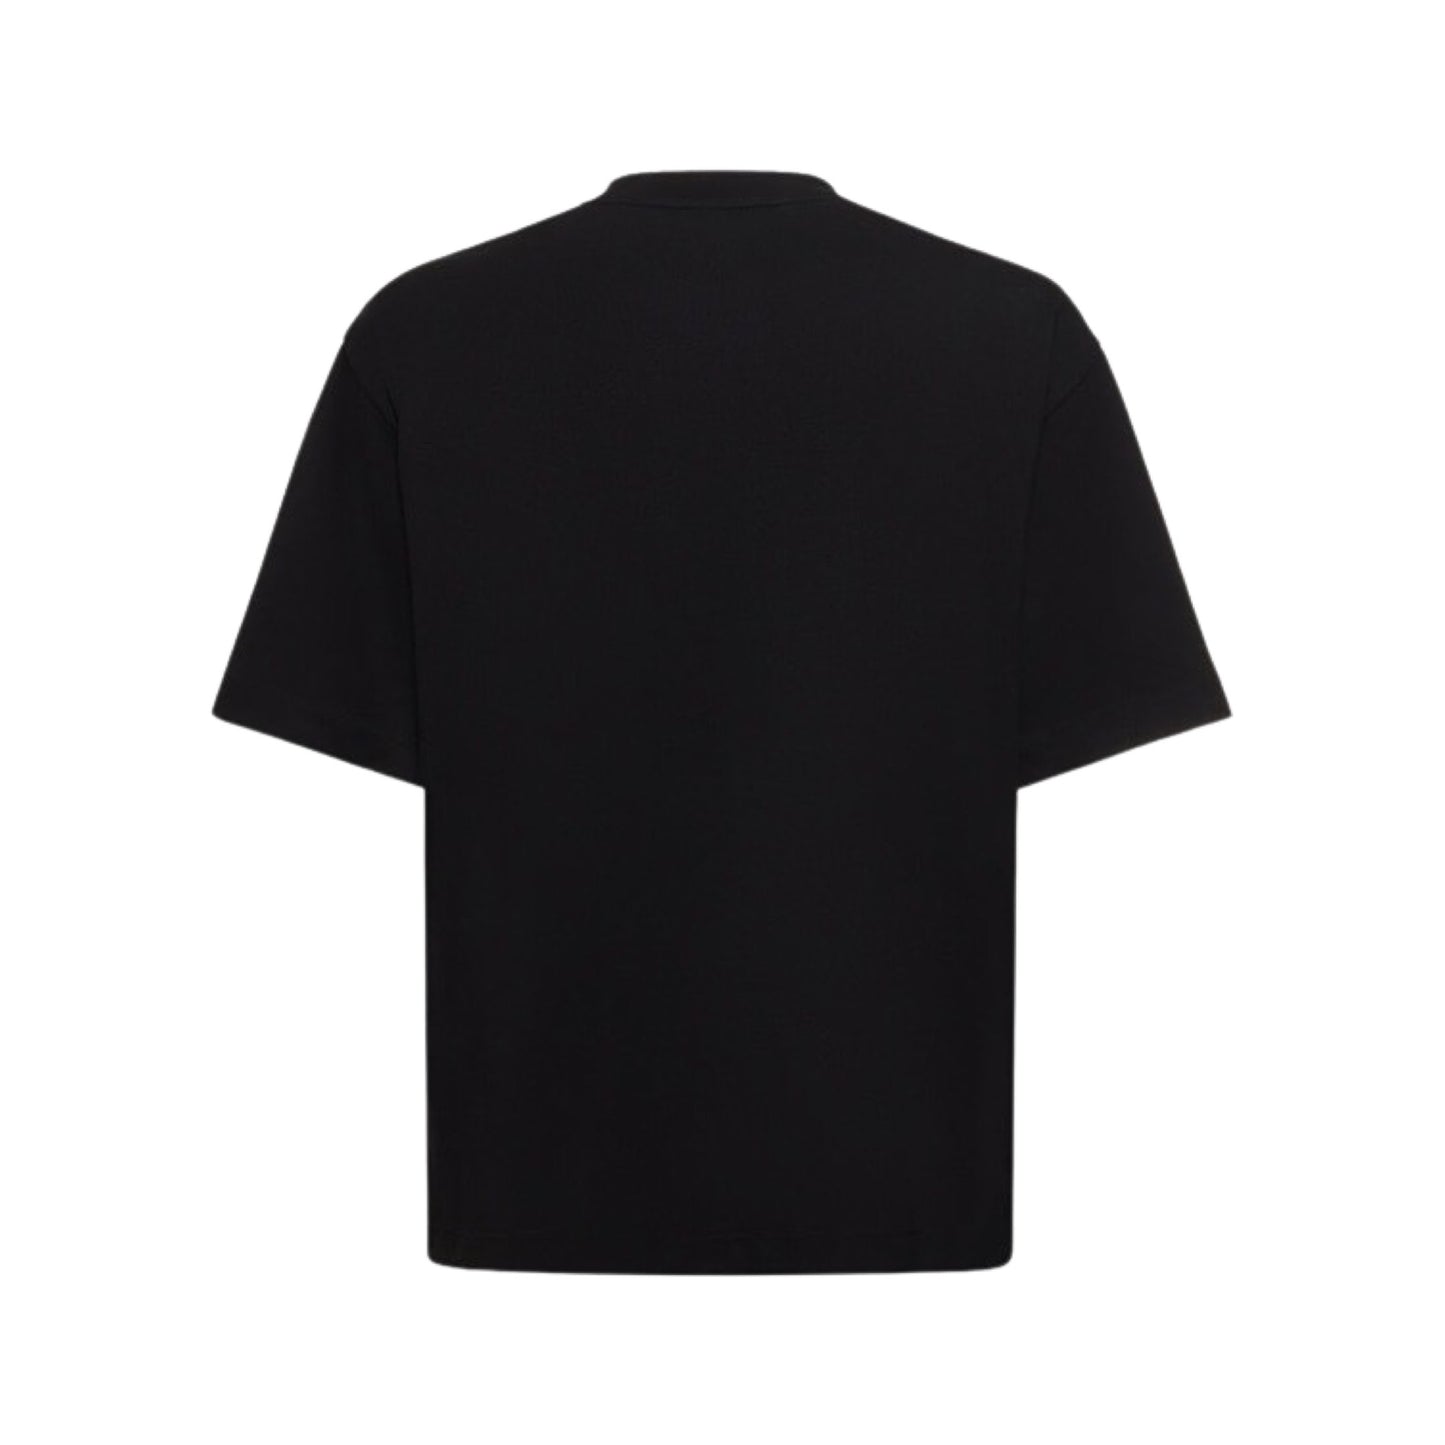 Off-White OW 23 print cotton t-shirt Black